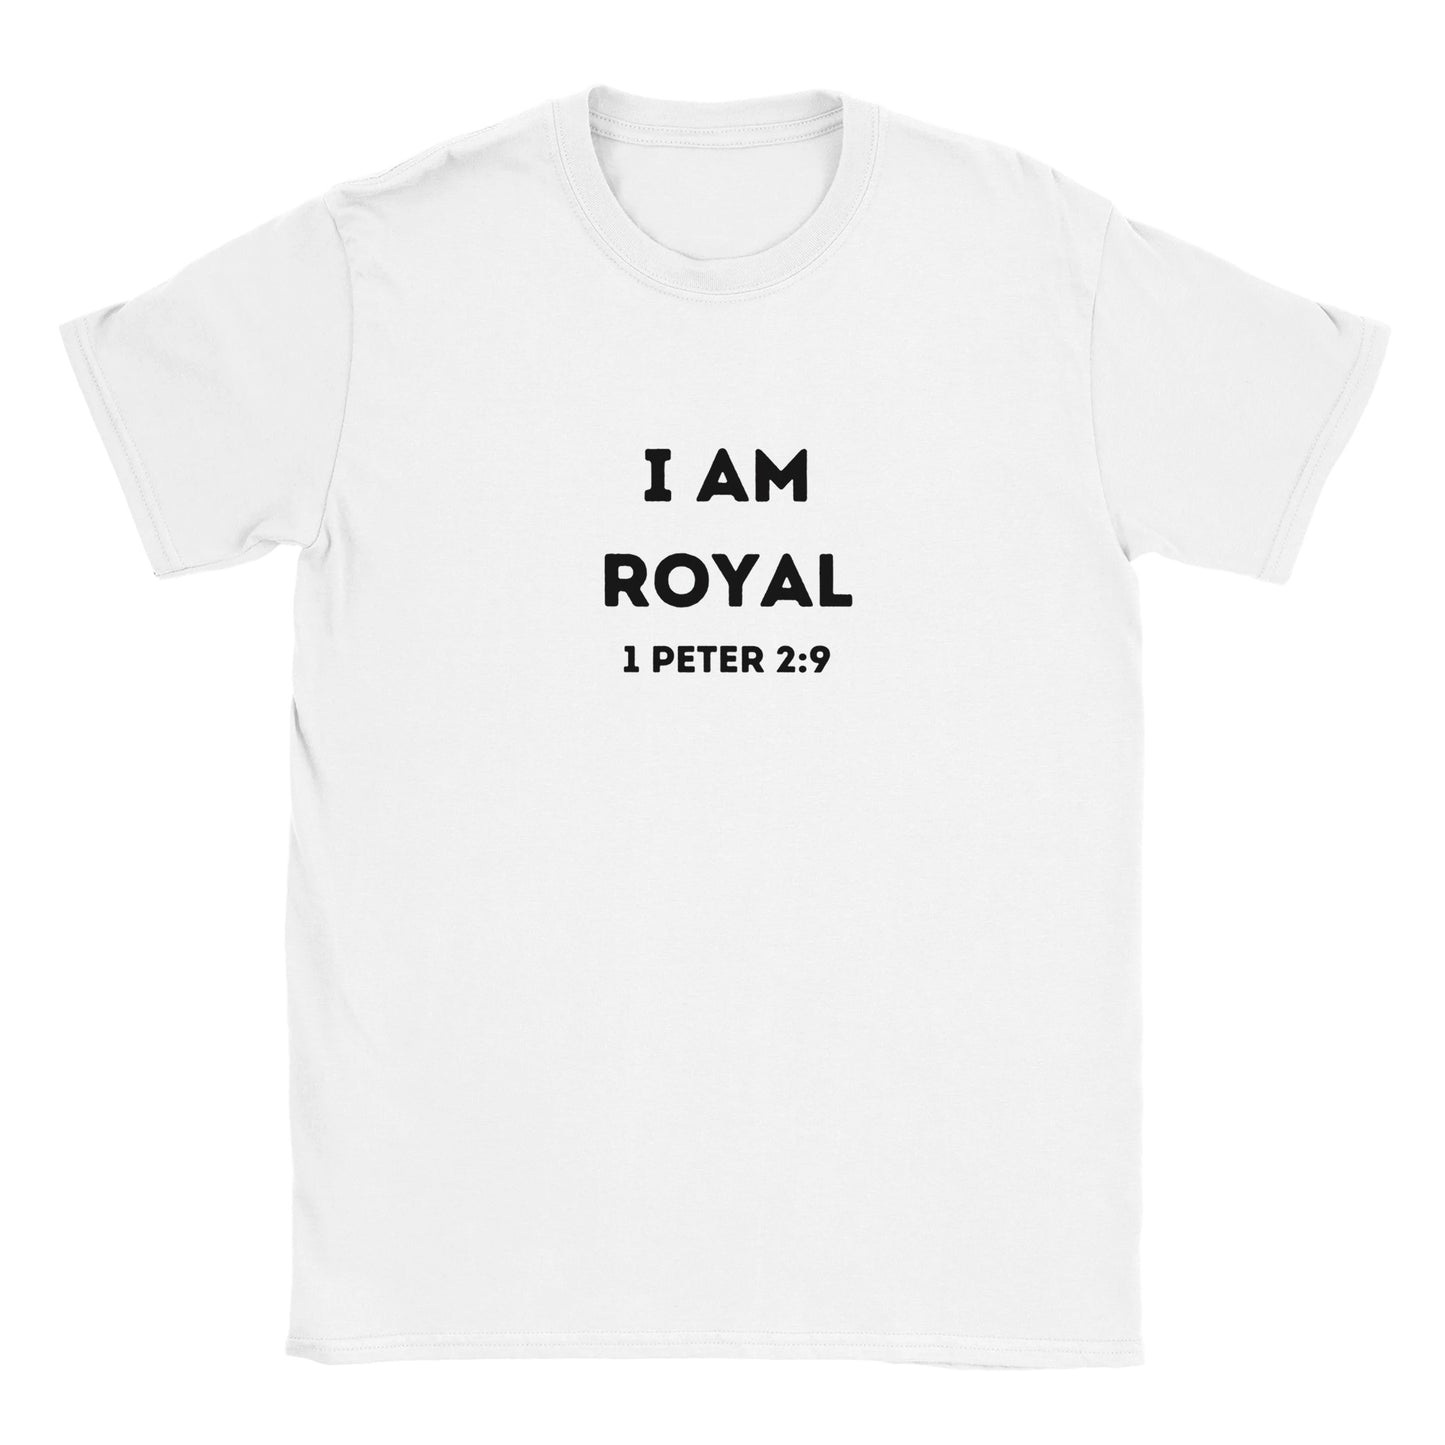 I am Royal Men’s Crewneck T-shirt